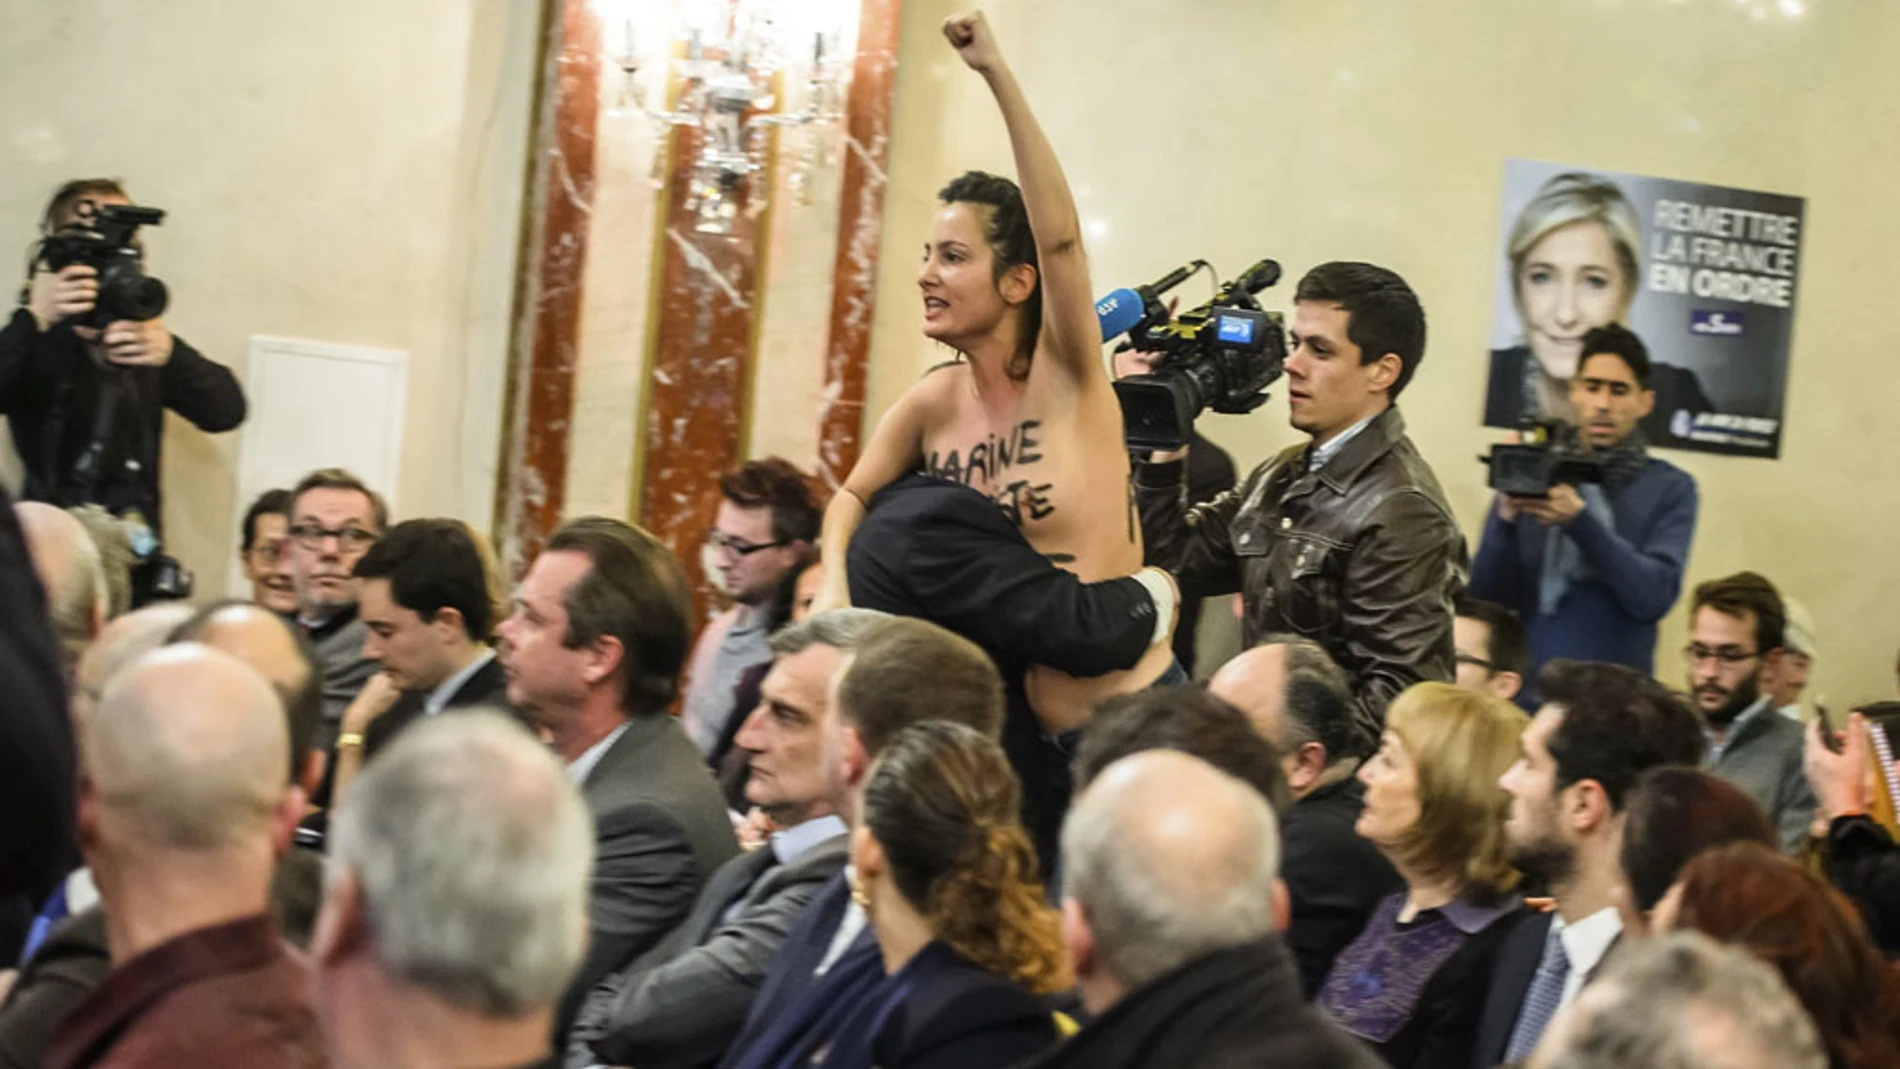 Activista de Femen irrumpiendo en un acto de Le Pen